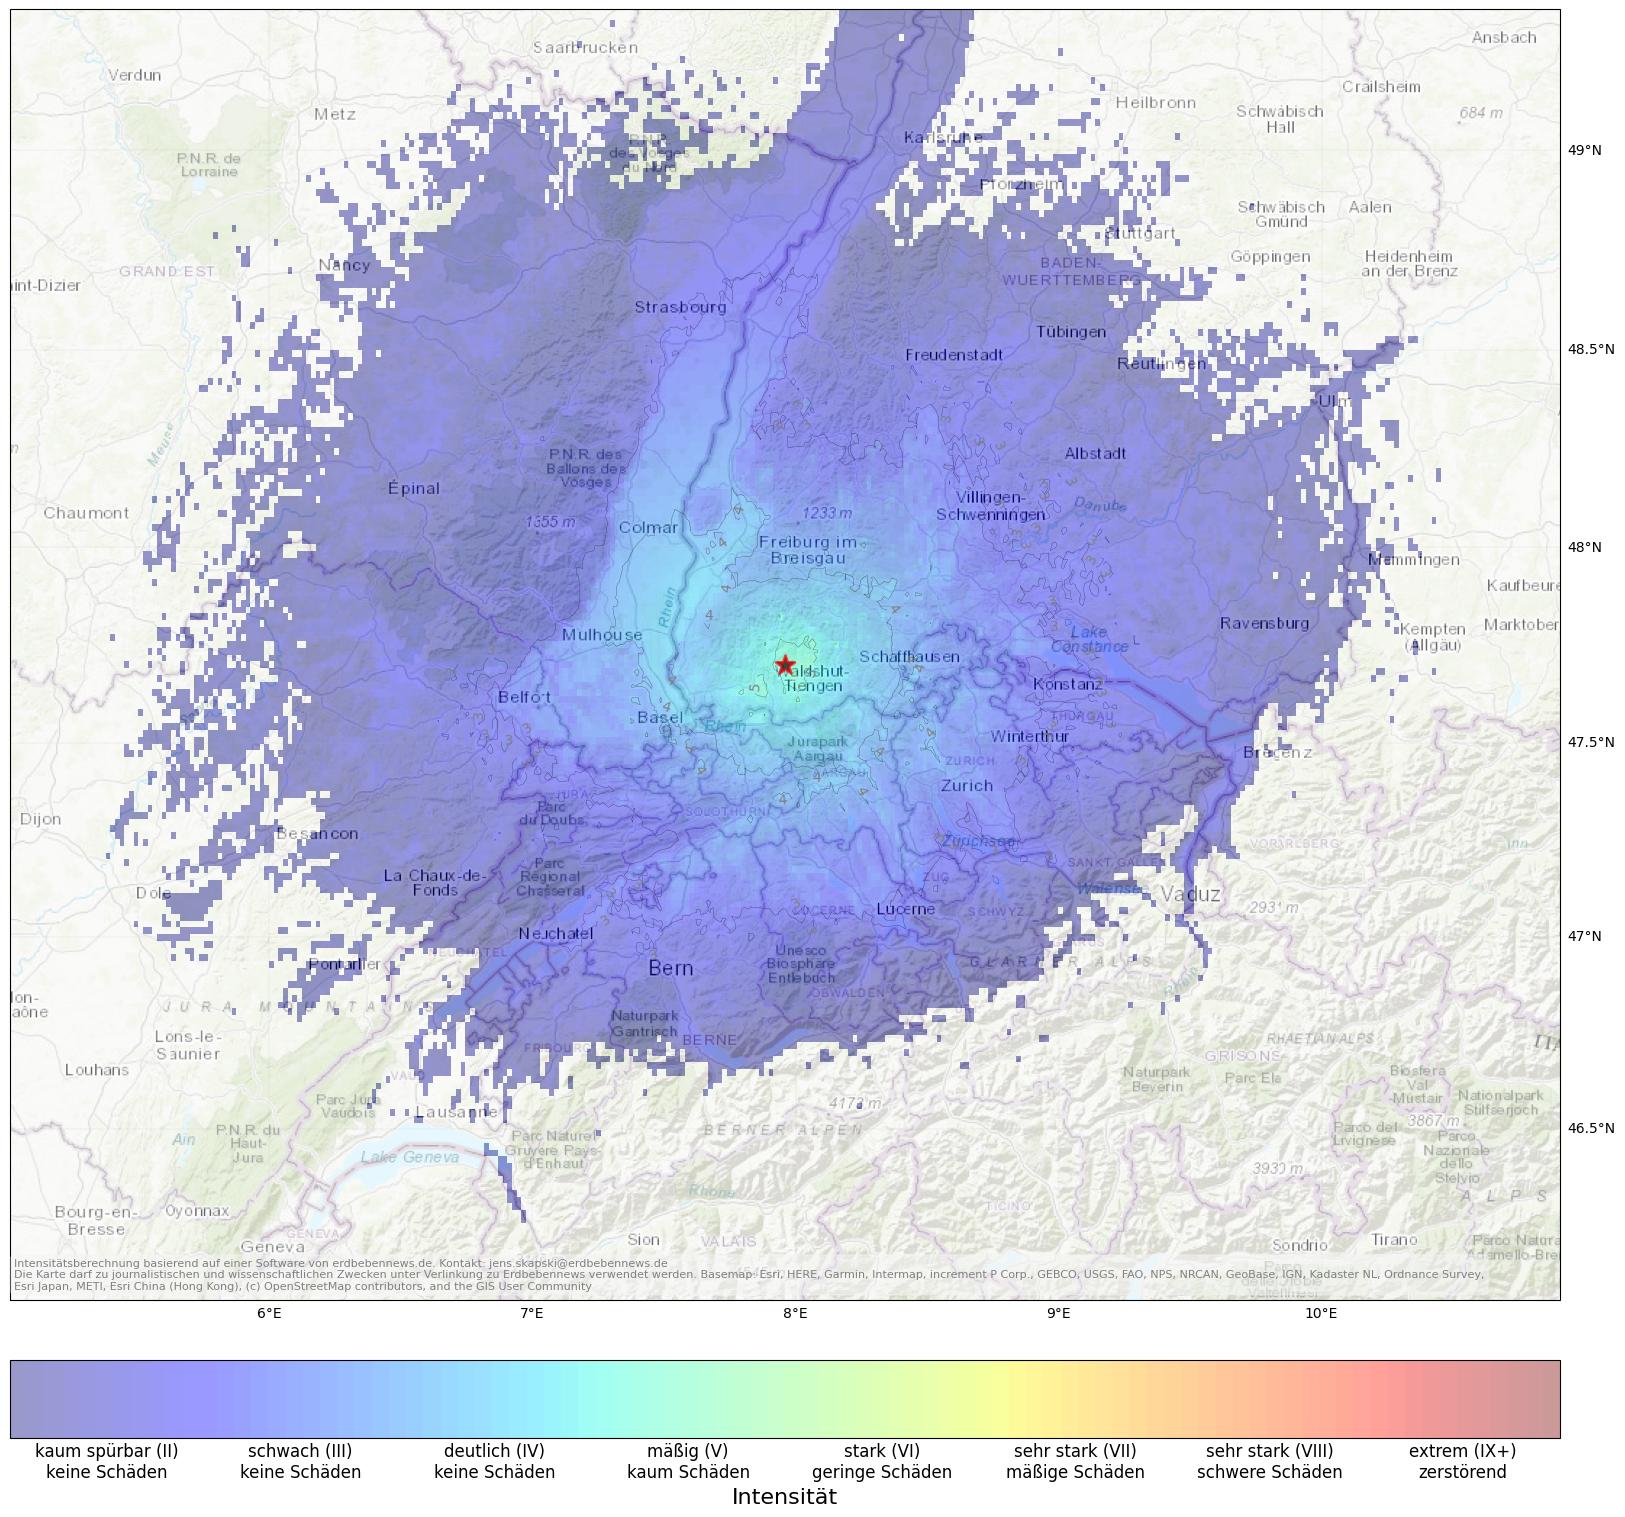 Berechnete Intensität (ShakeMap) des Erdbebens der Stärke 4.2 am 27. June, 03:06 in Deutschland